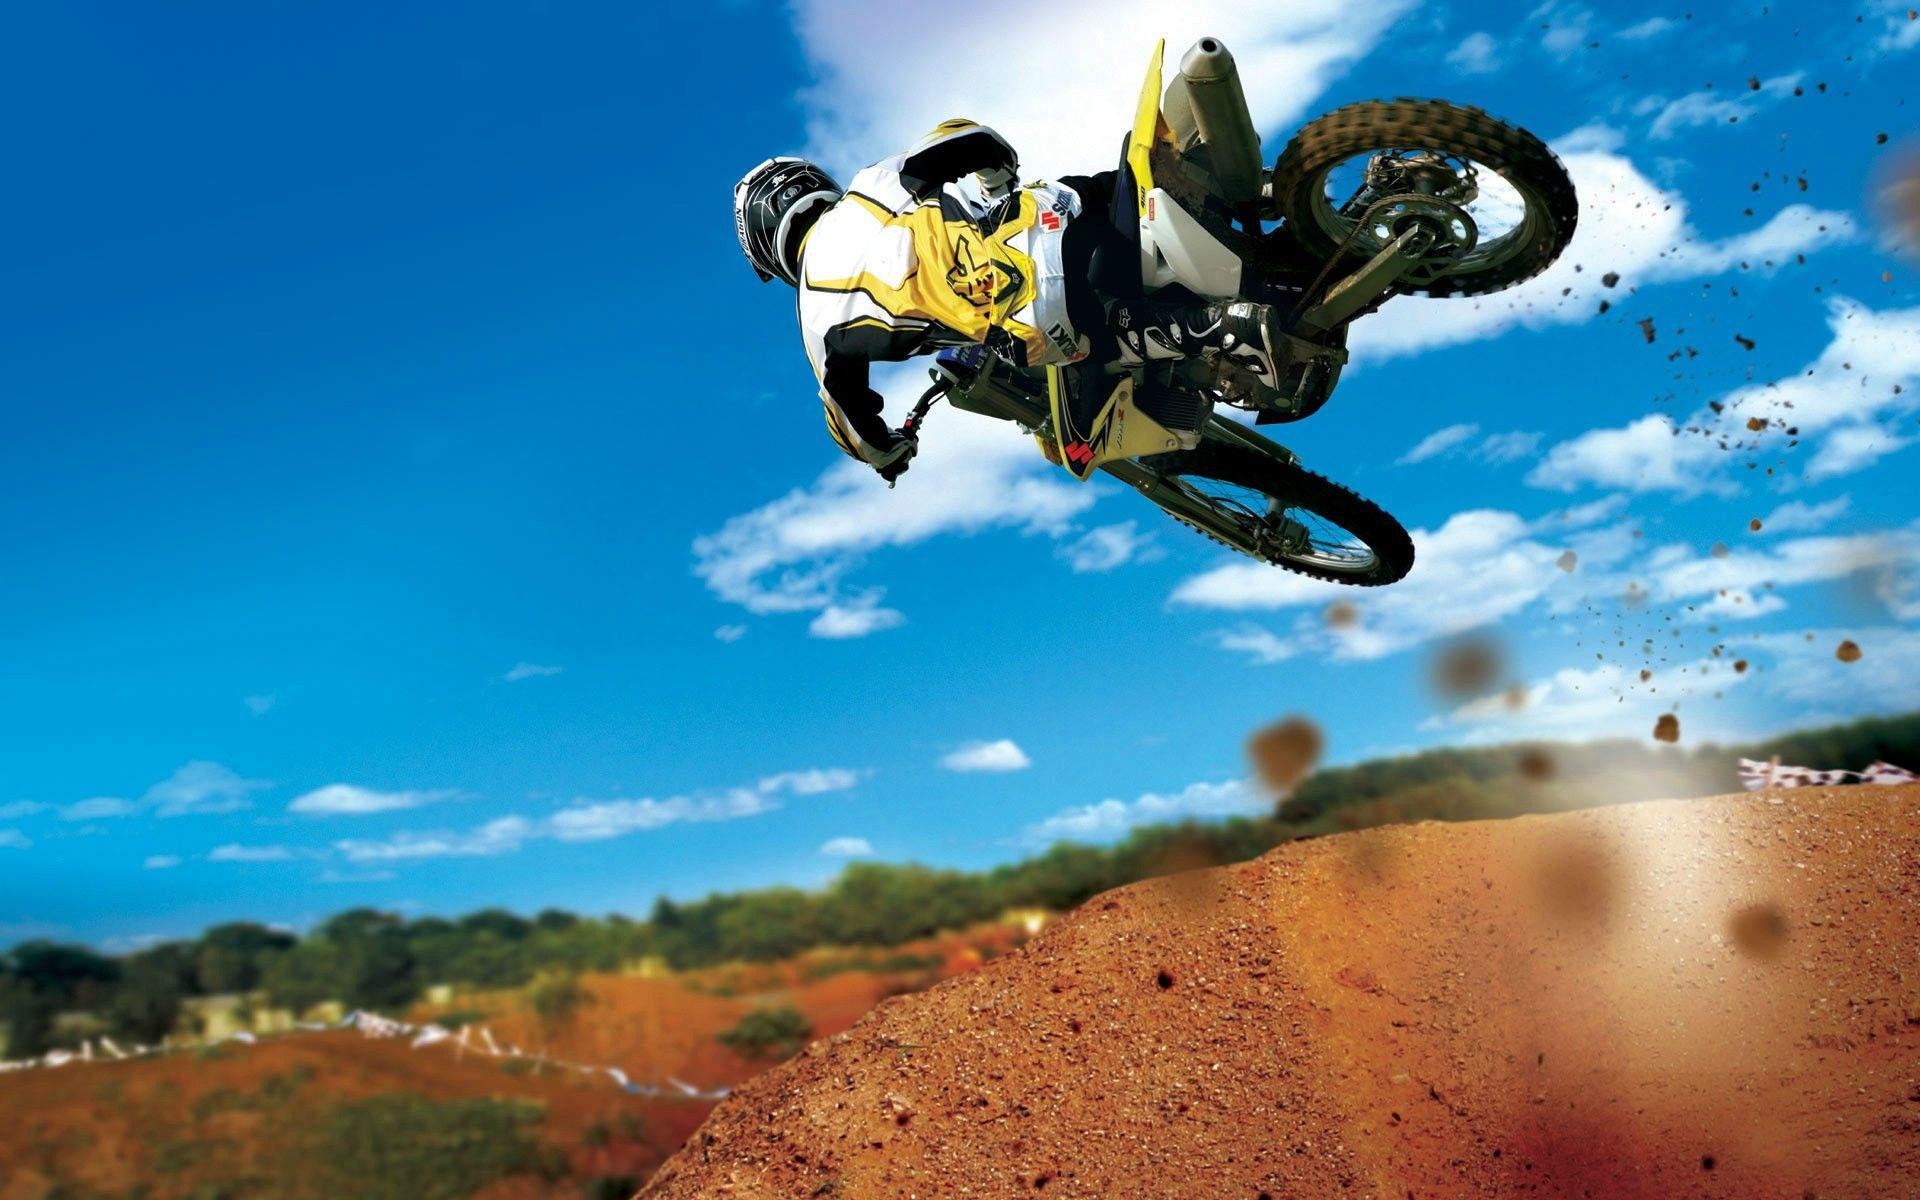 Motocross Dirt Bike Stunt Jump Desert Poster Wall Art Print Sizes A4 A2 A1  A0